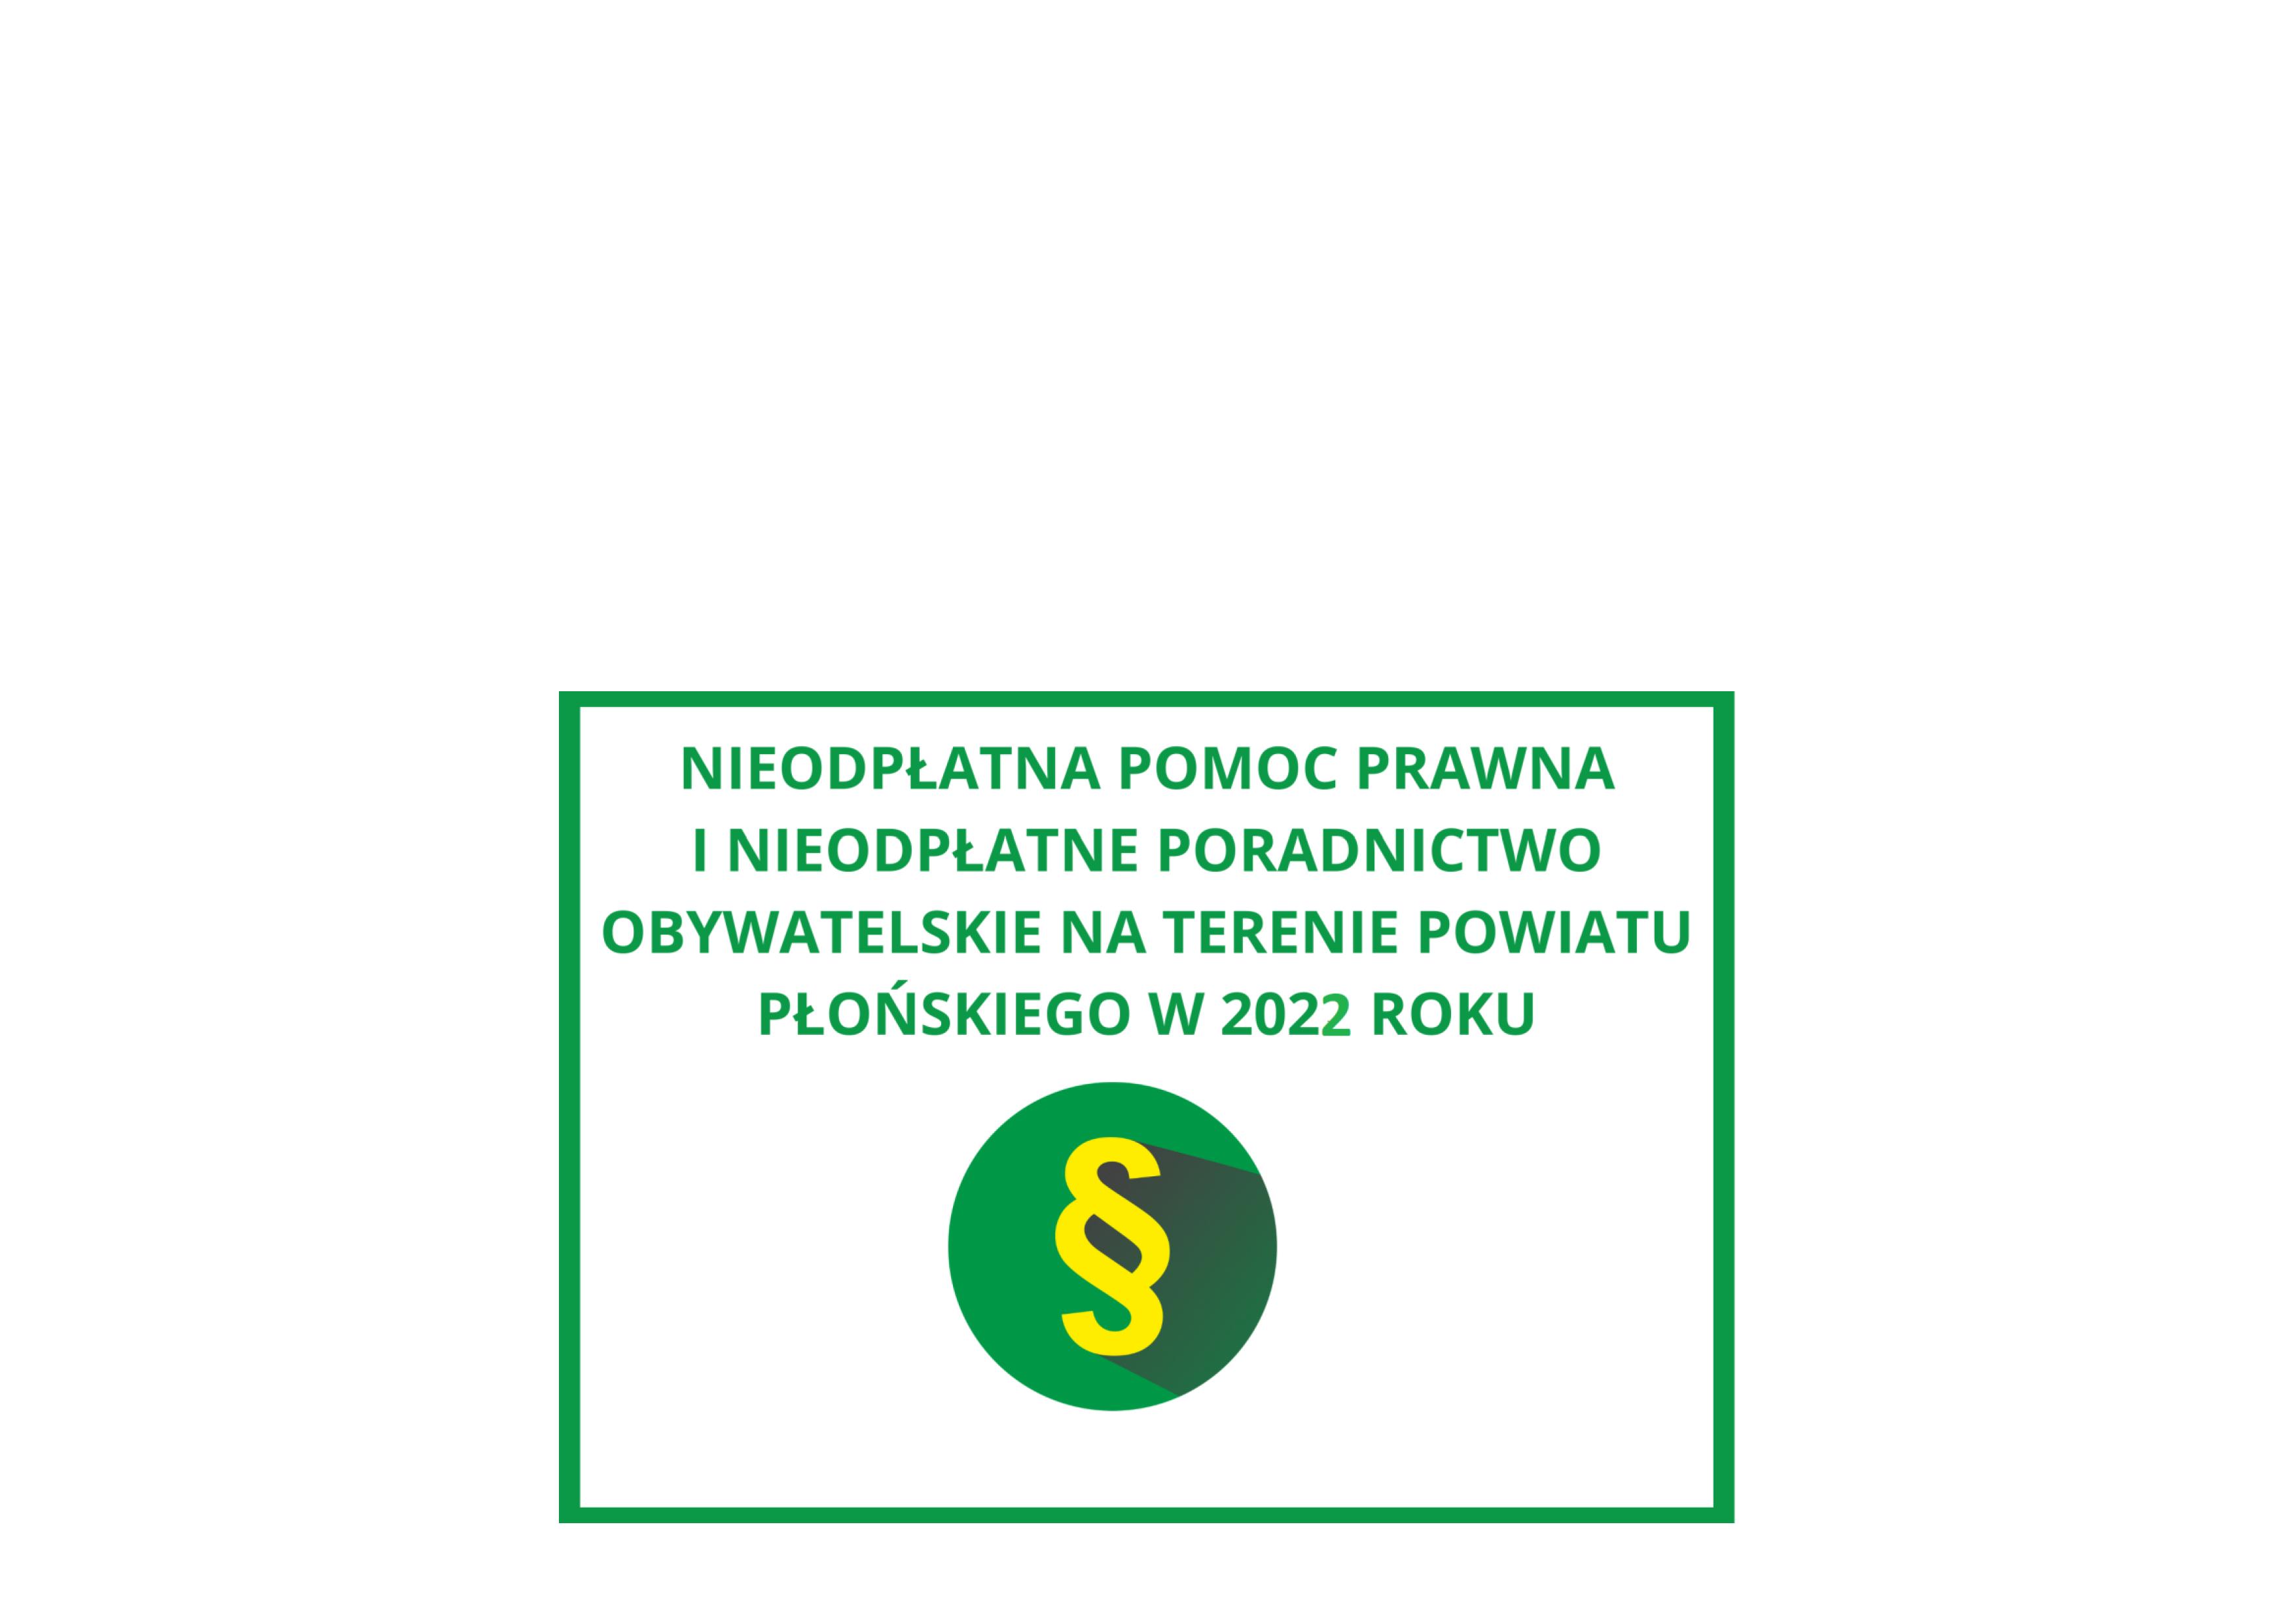 Nieodpłatna pomoc prawna i poradnictwo w powiecie płońskim w 2022 roku